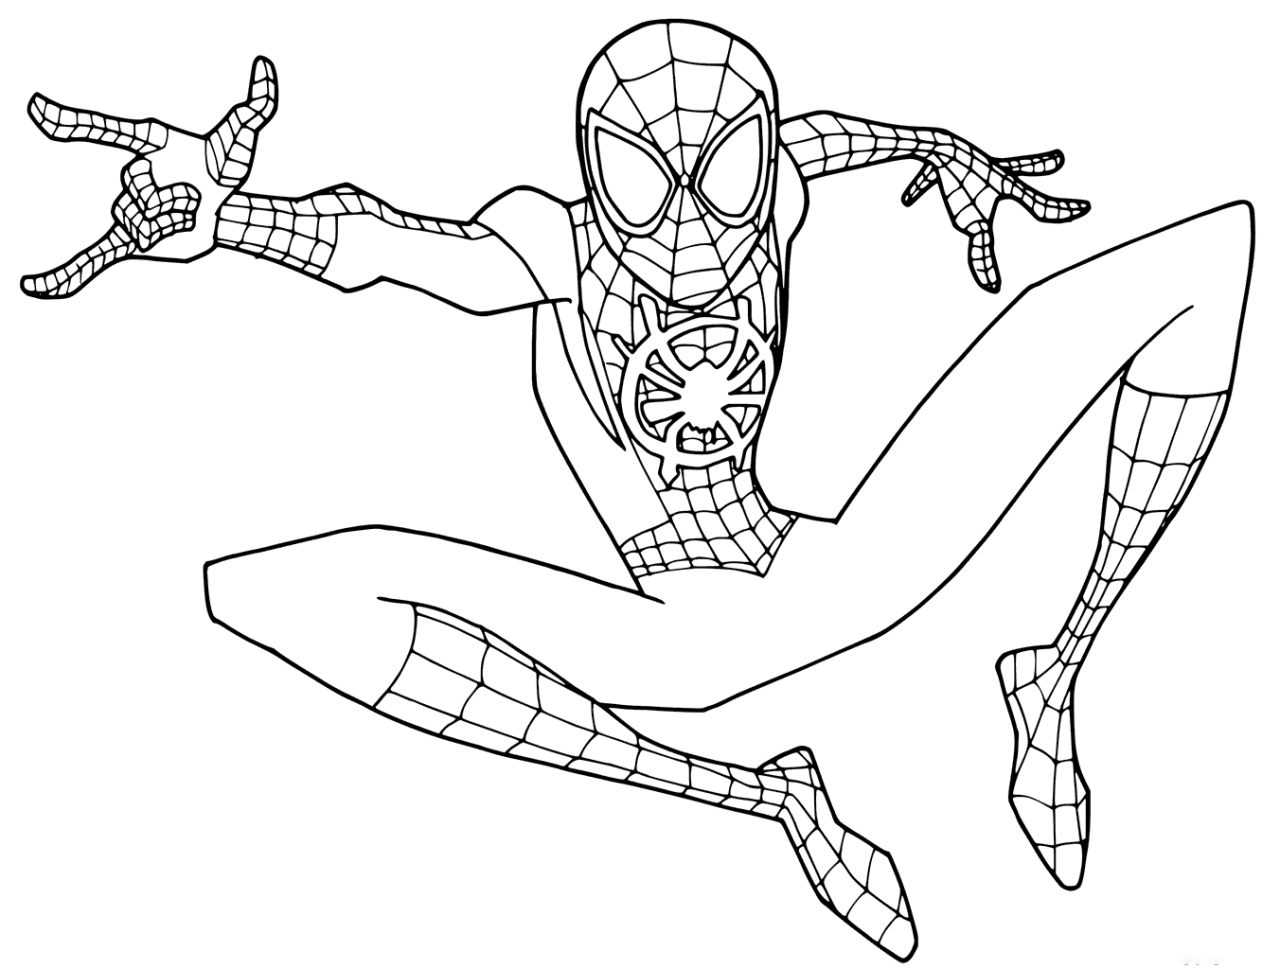 Xem hơn 100 ảnh về hình vẽ siêu nhân nhện  NEC